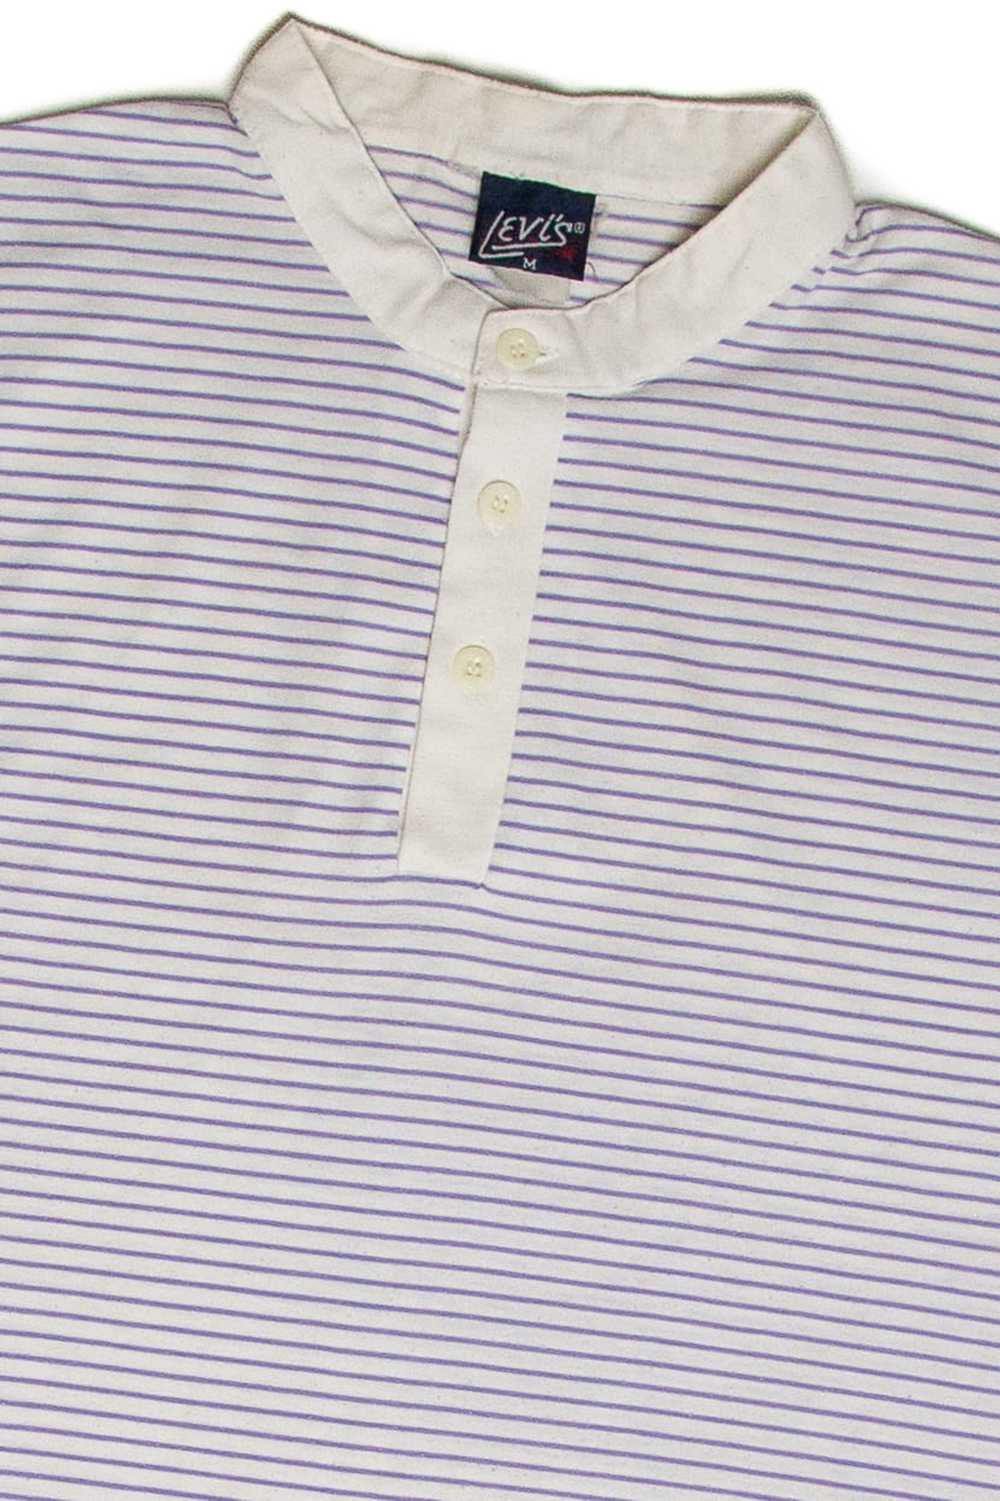 Vintage Levi's Button Up T-Shirt - image 2